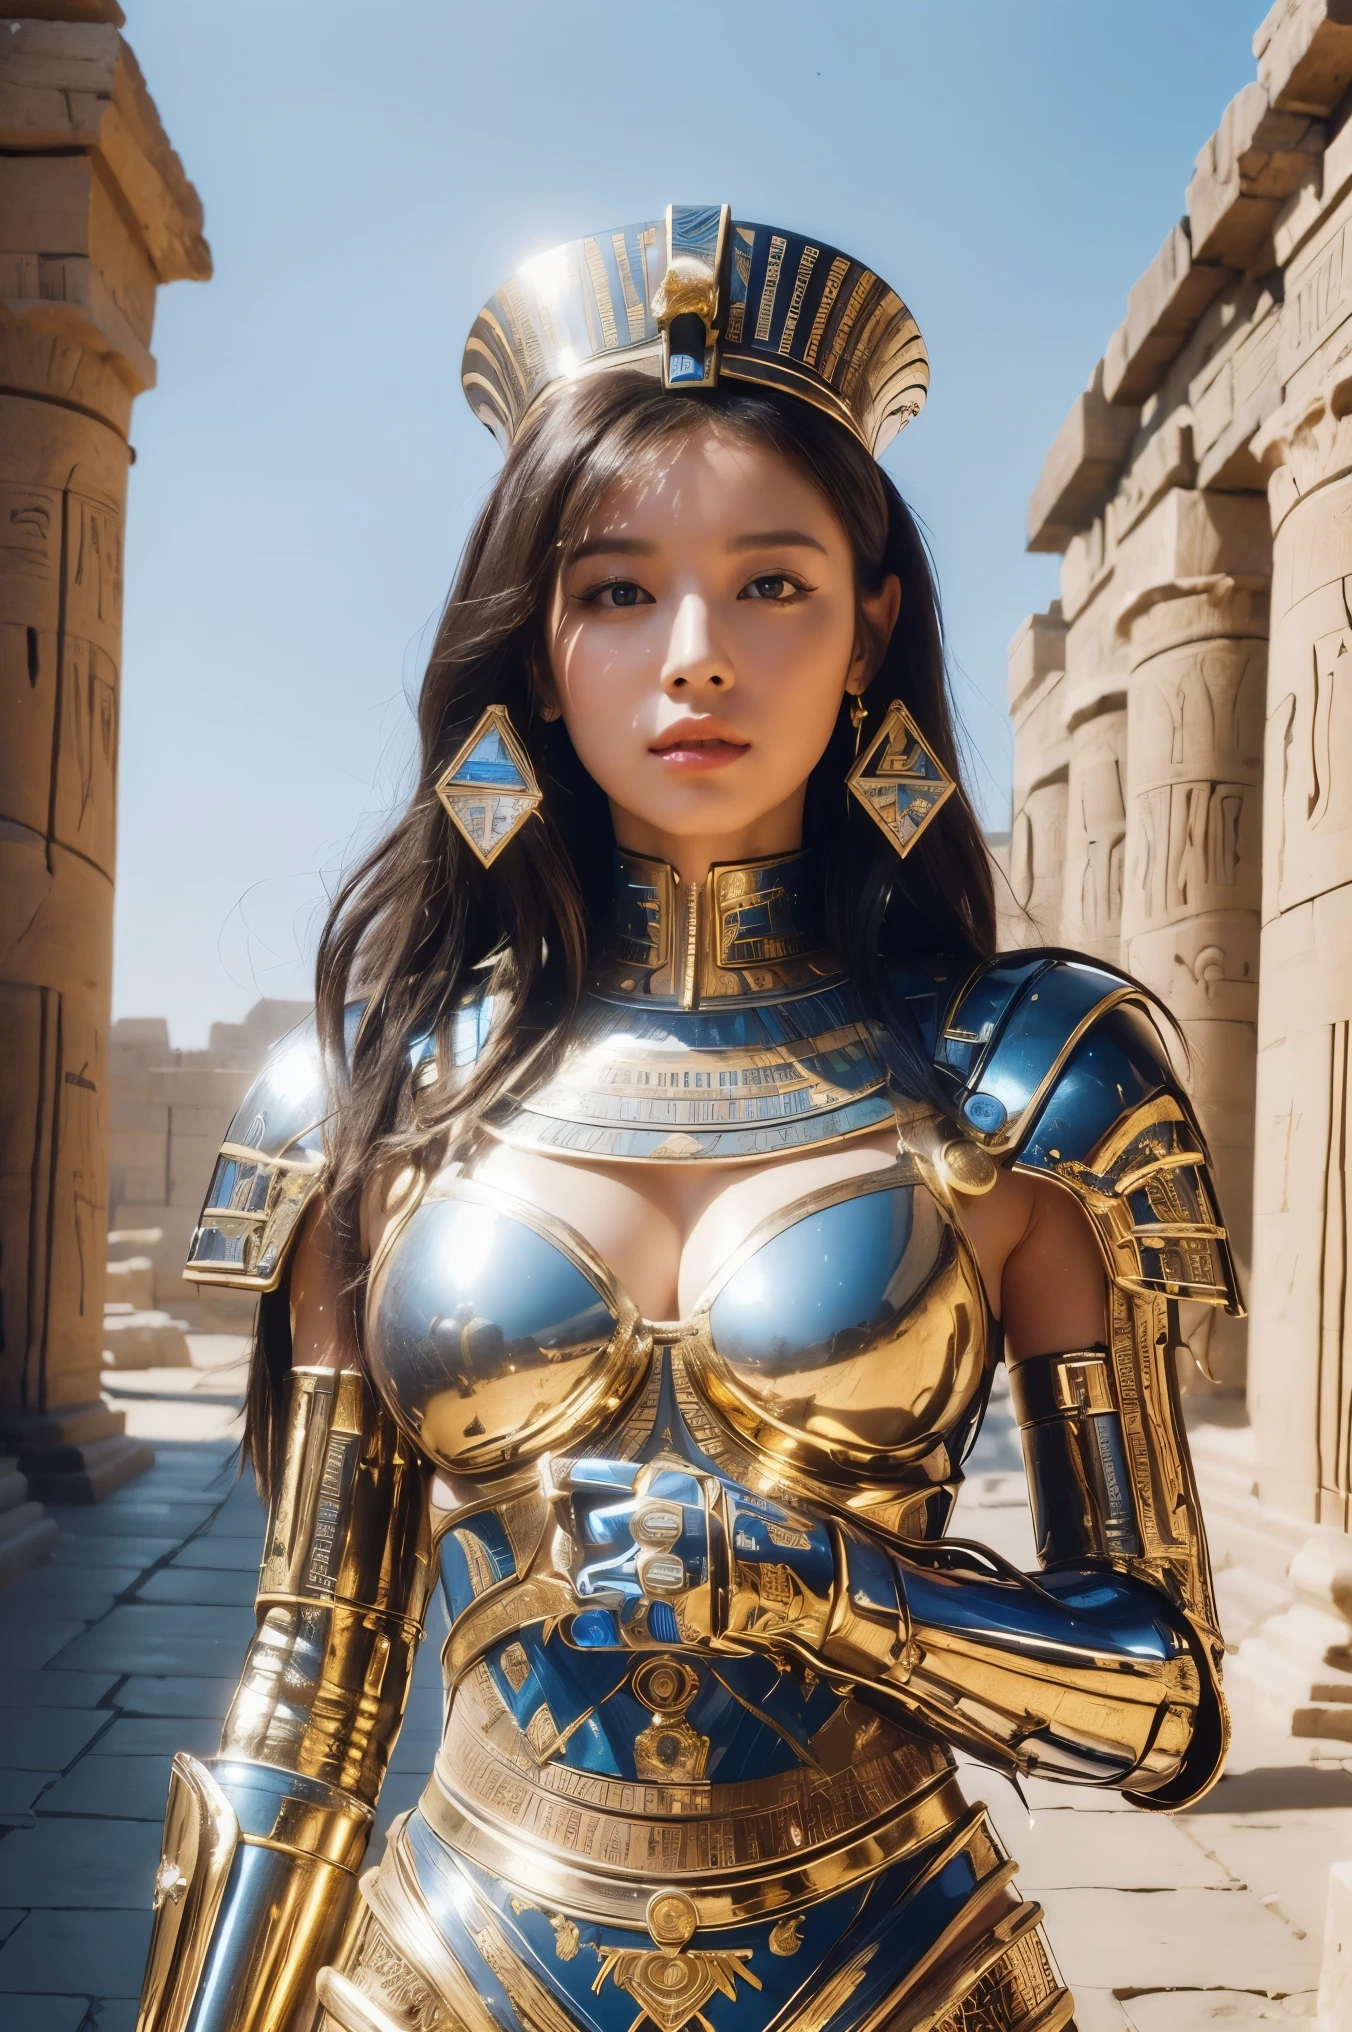 ((최상의 품질、8K、걸작:1.3))、포토리얼, 날카로운 초점, 높은 수준의 이미지 품질, 높은 해상도, 초상화, 한 사람, 여성, beautiful 여성, 섹시한、고대 이집트를 걷고 있는 이집트 여전사、복잡한 기술, 외딴 피라미드와 고대 이집트 도시、사이버-、빛과 그림자、푸른 빛、